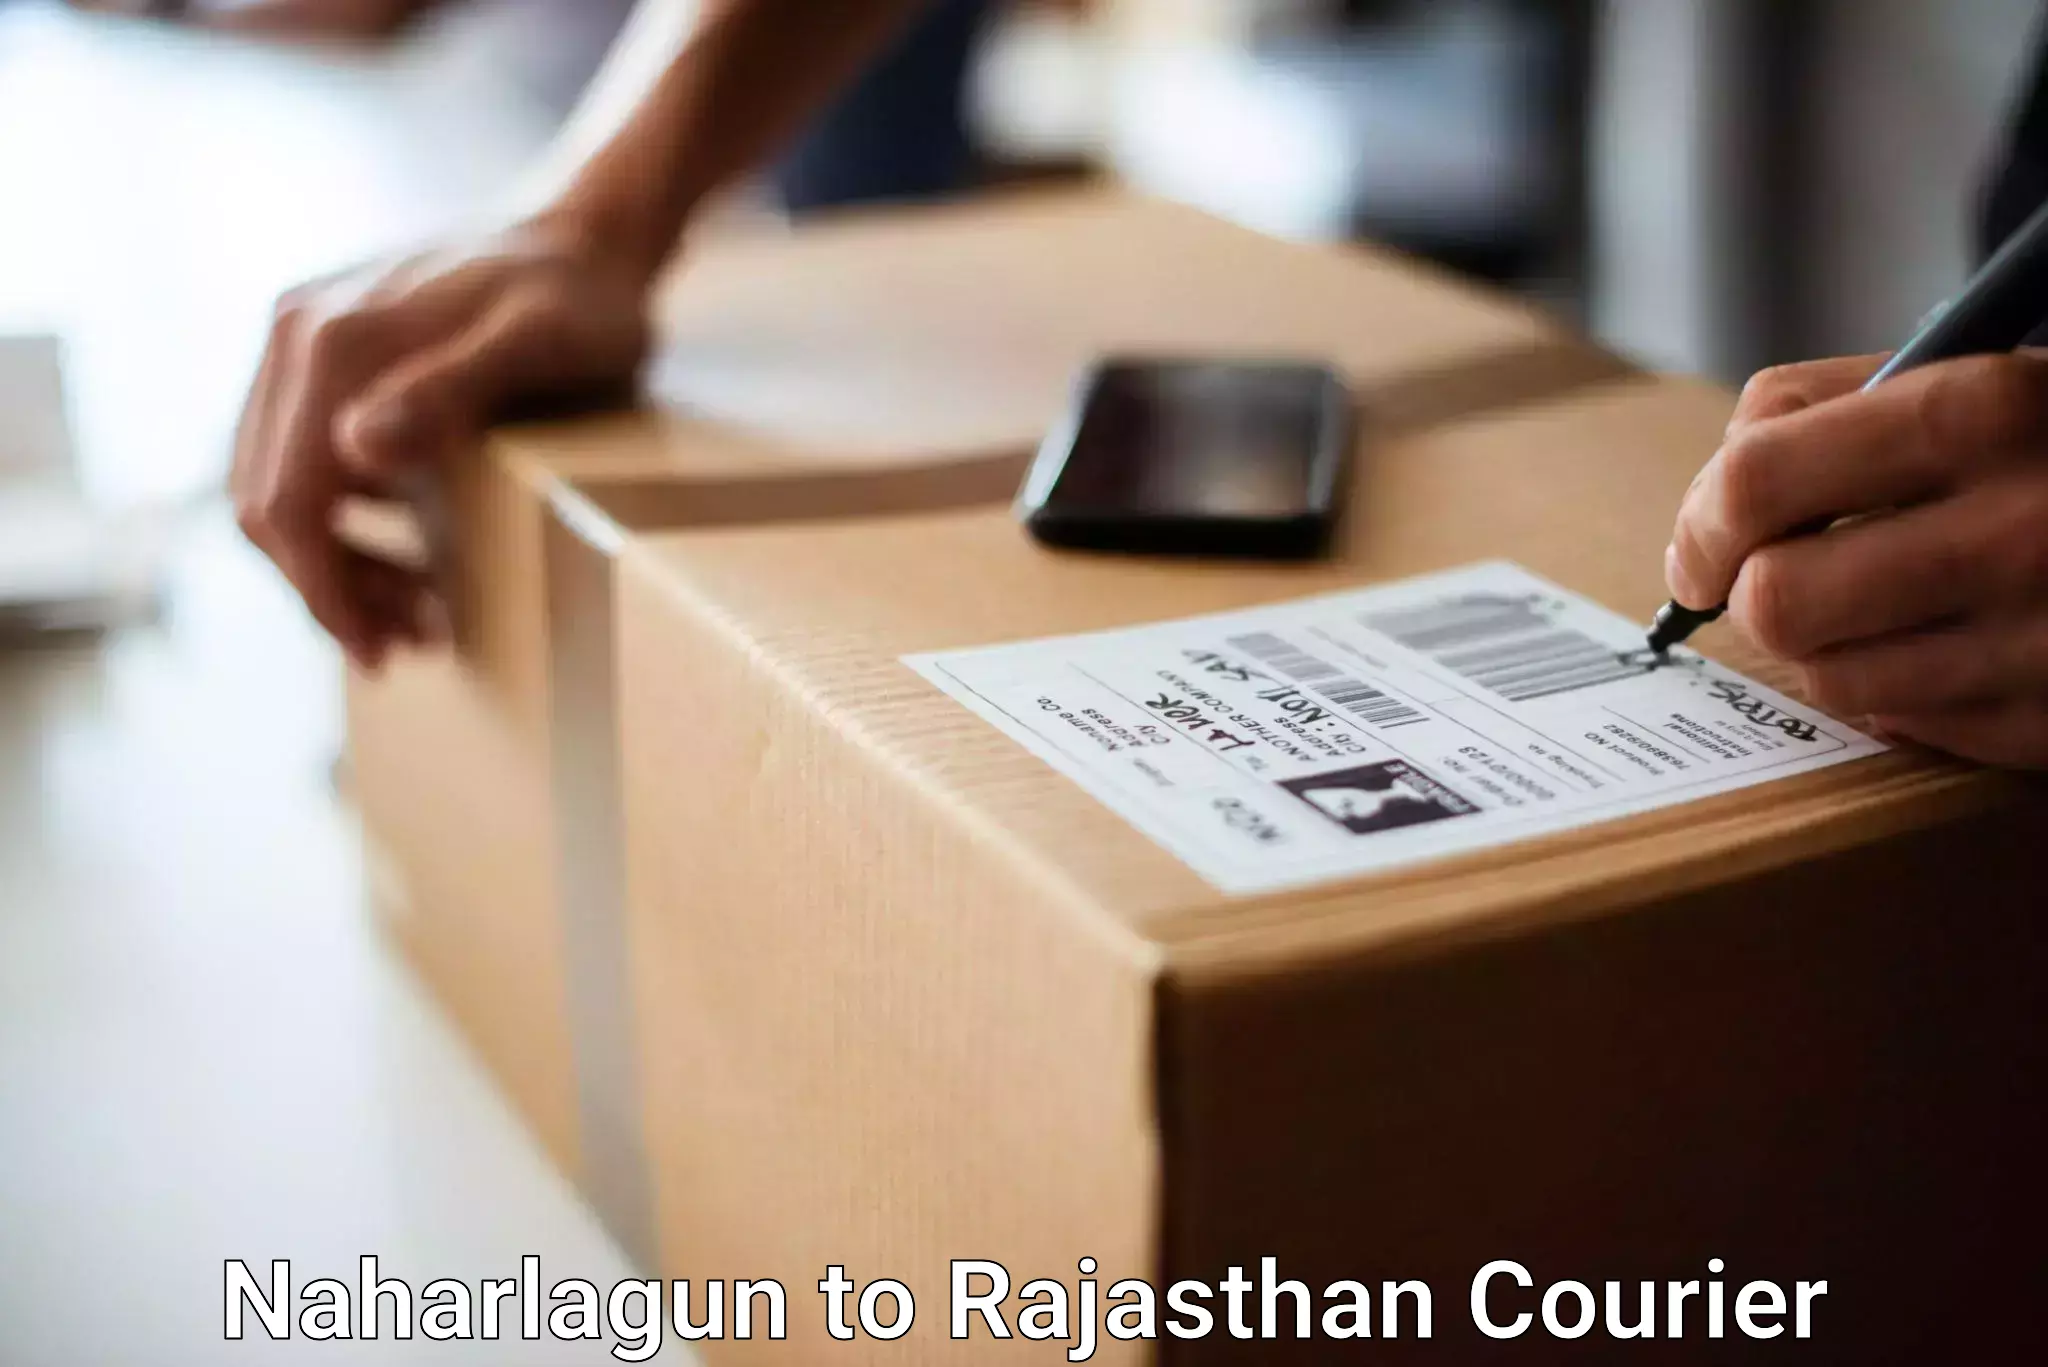 Baggage transport quote Naharlagun to Jaipur